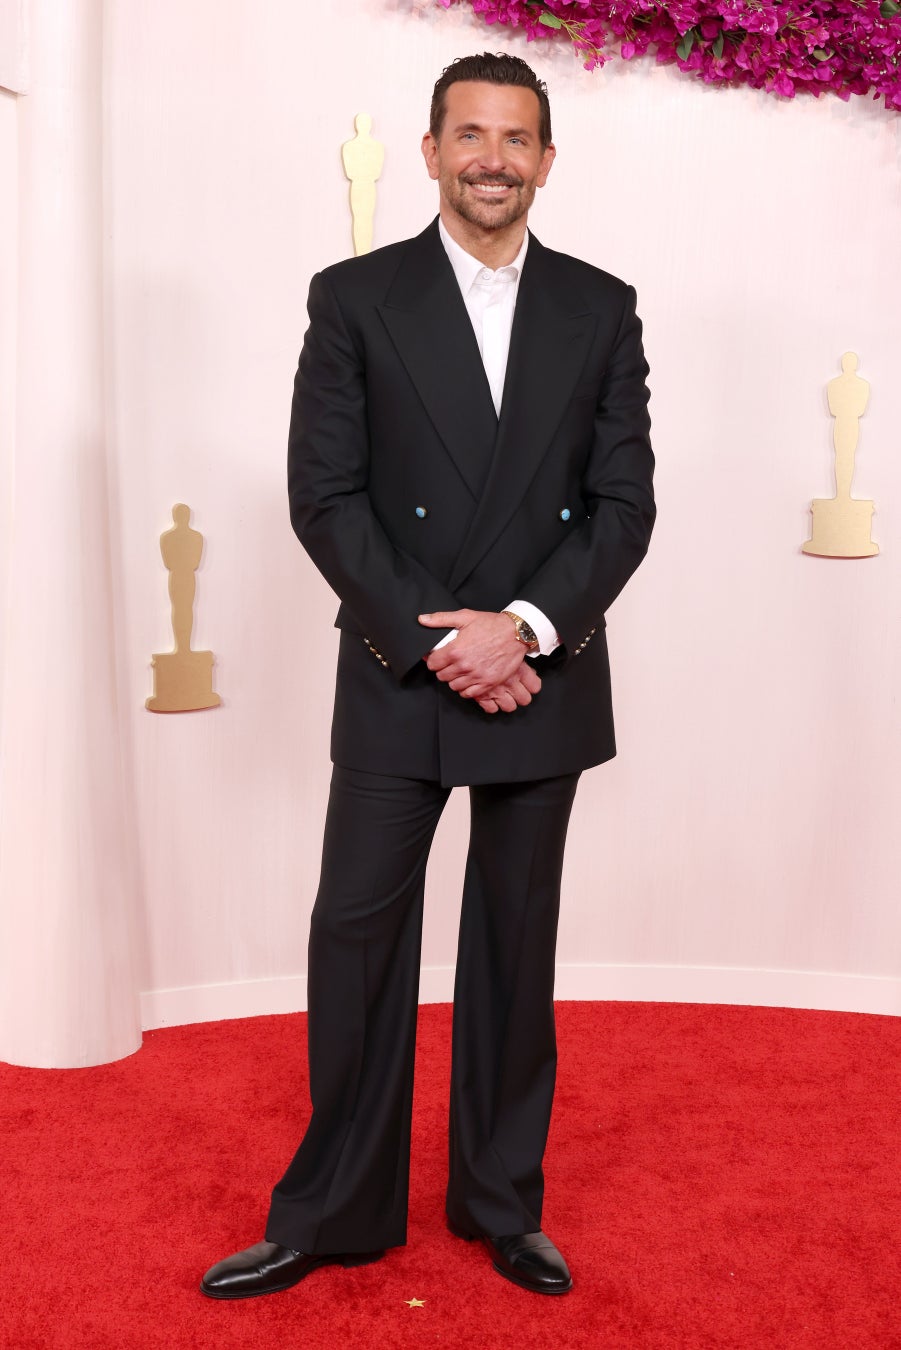 【ルイ·ヴィトン】第96回アカデミー賞の授賞式にセレブリティがルイ·ヴィトンを着用